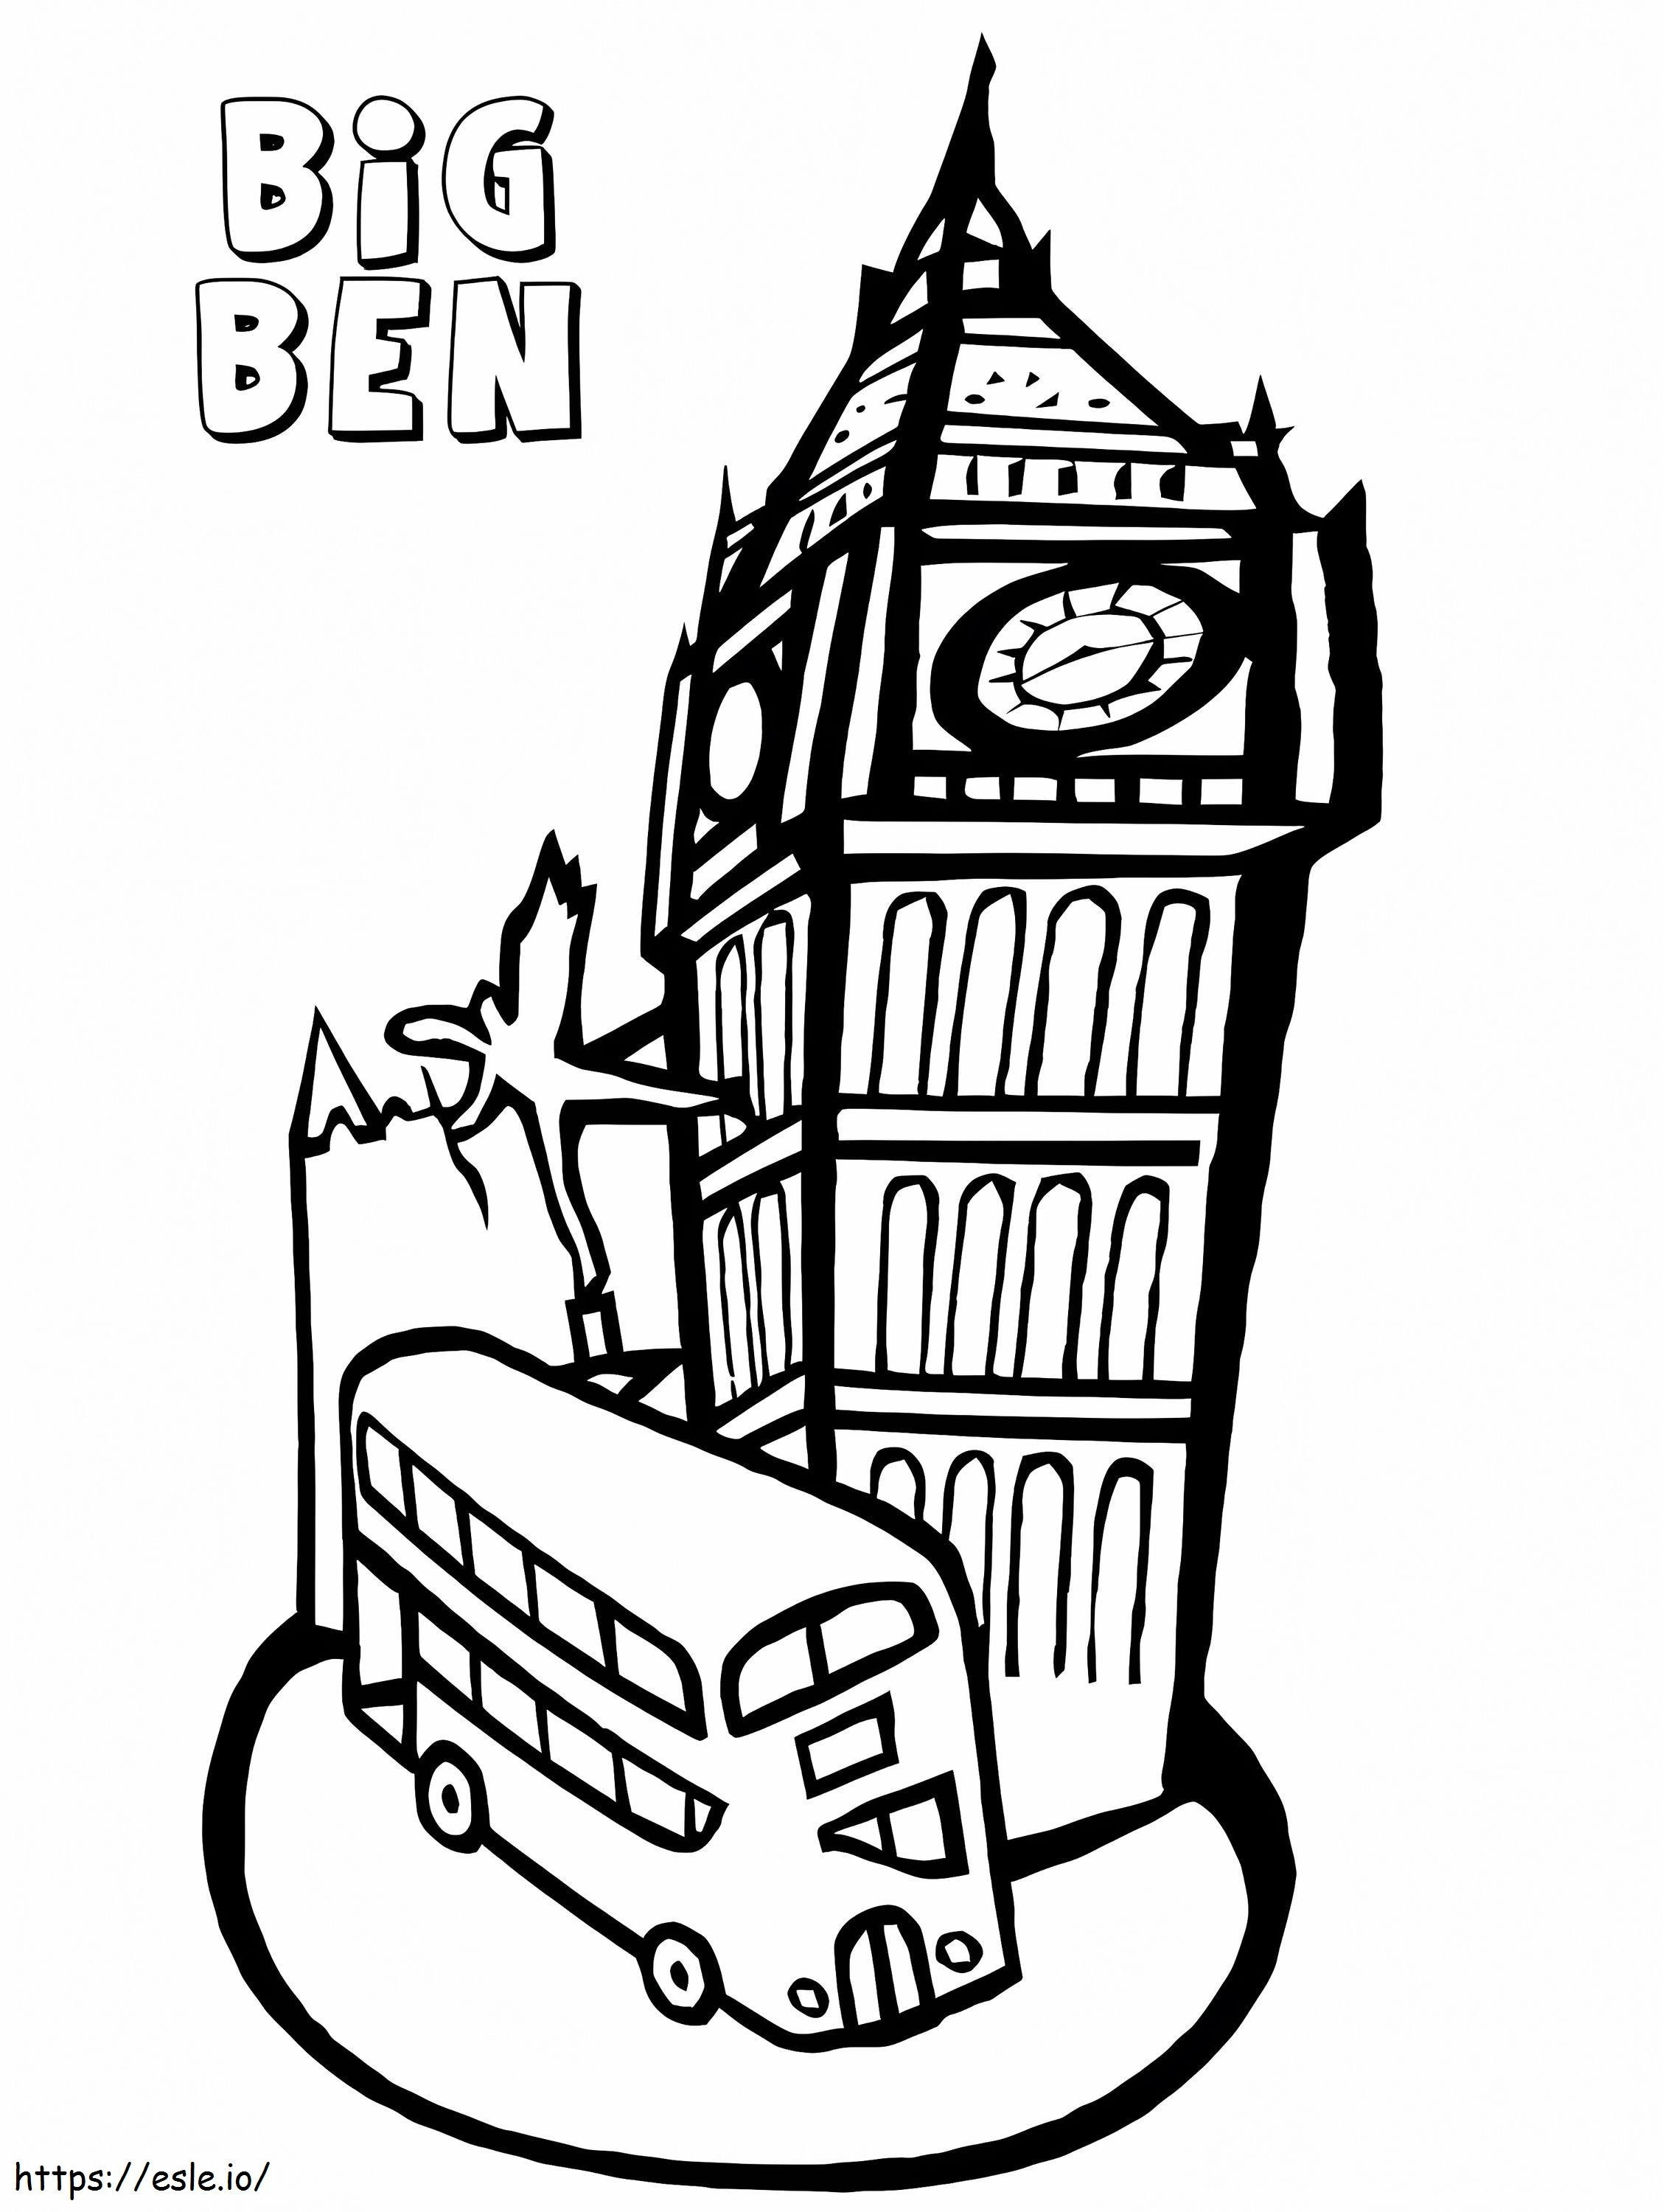 Bus und Big Ben ausmalbilder